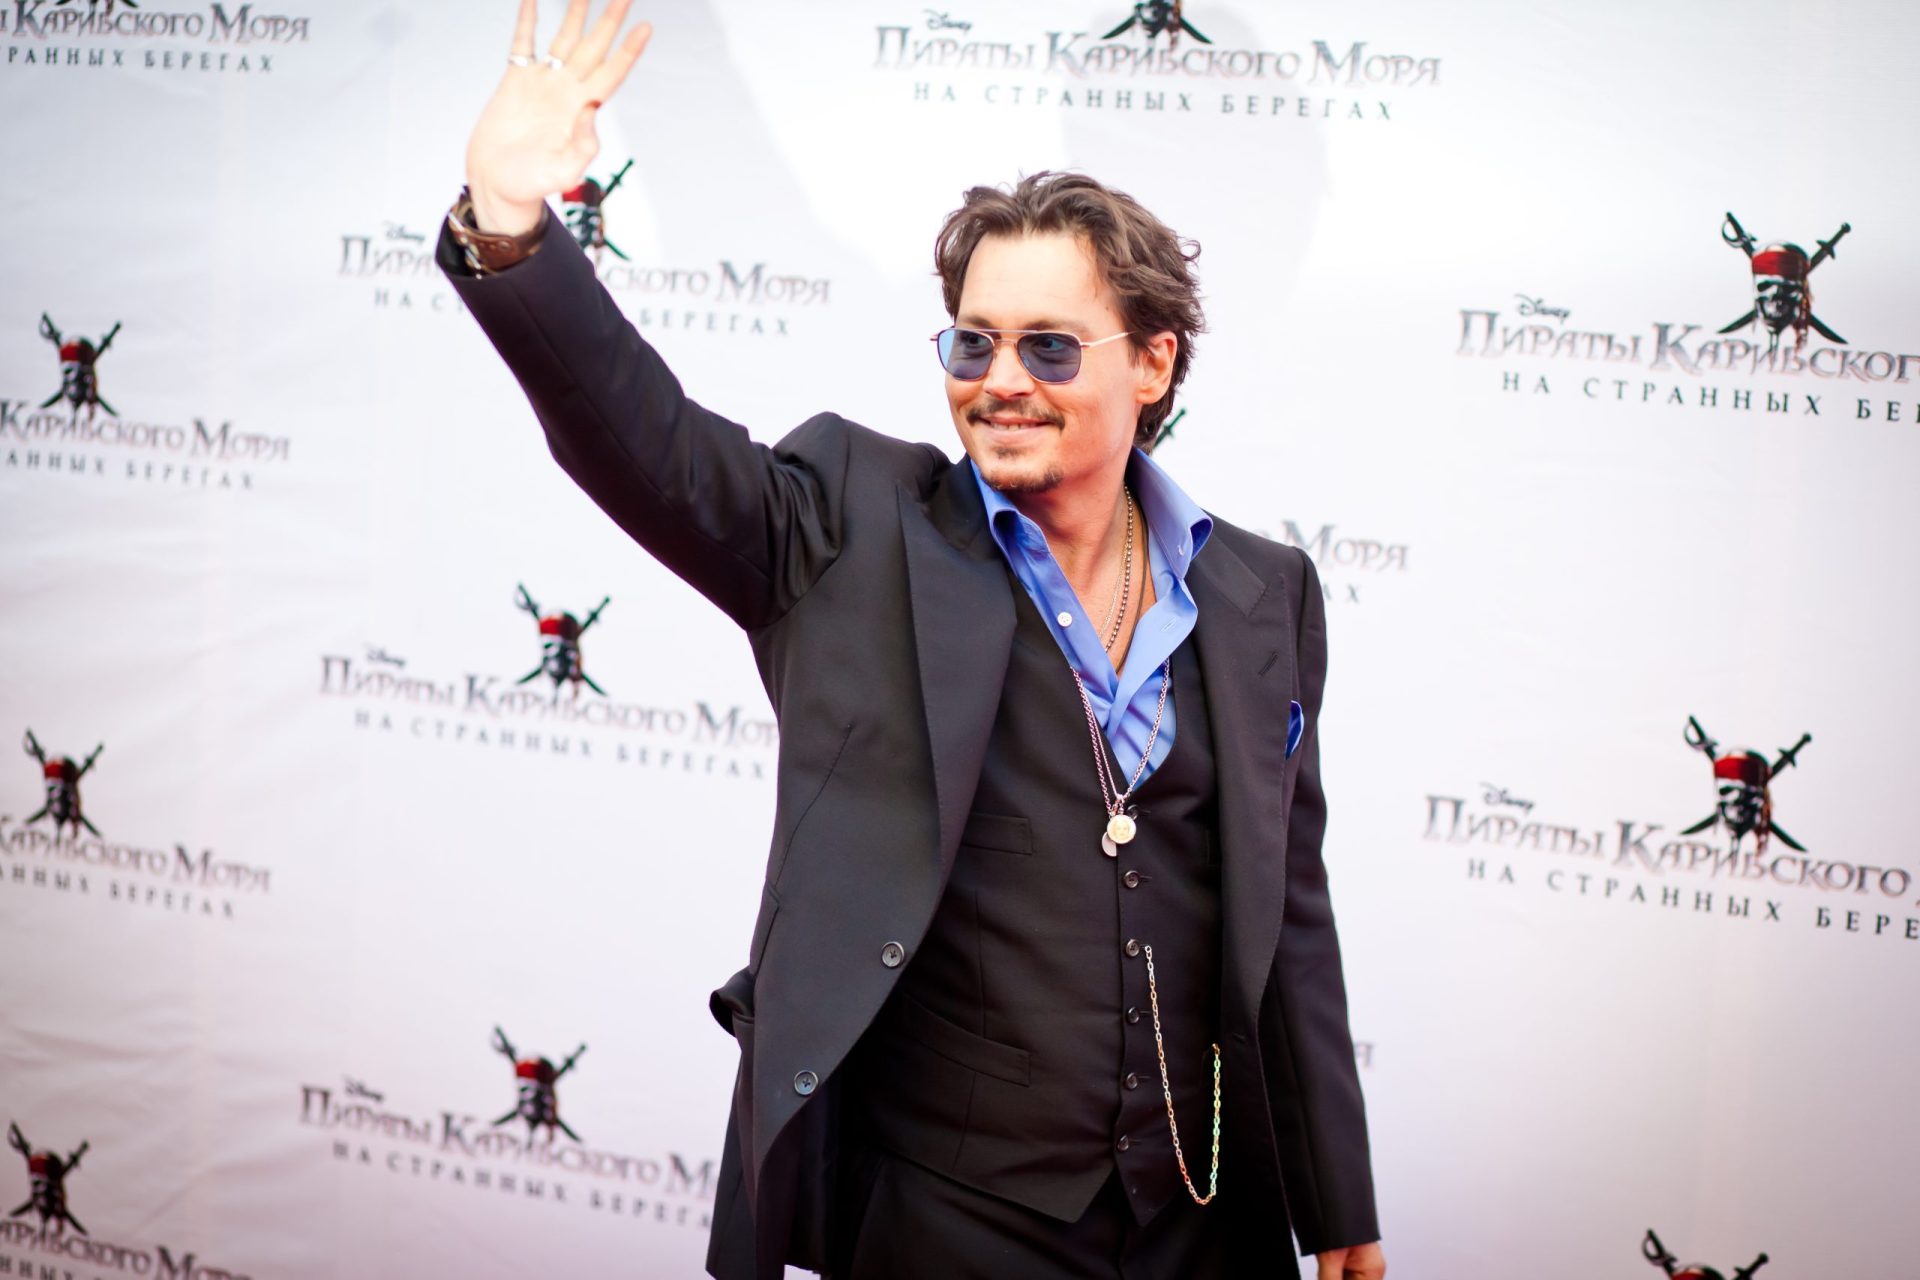 Intruso tomou banho e serviu-se de bebidas na mansão de Johnny Depp em Hollywood